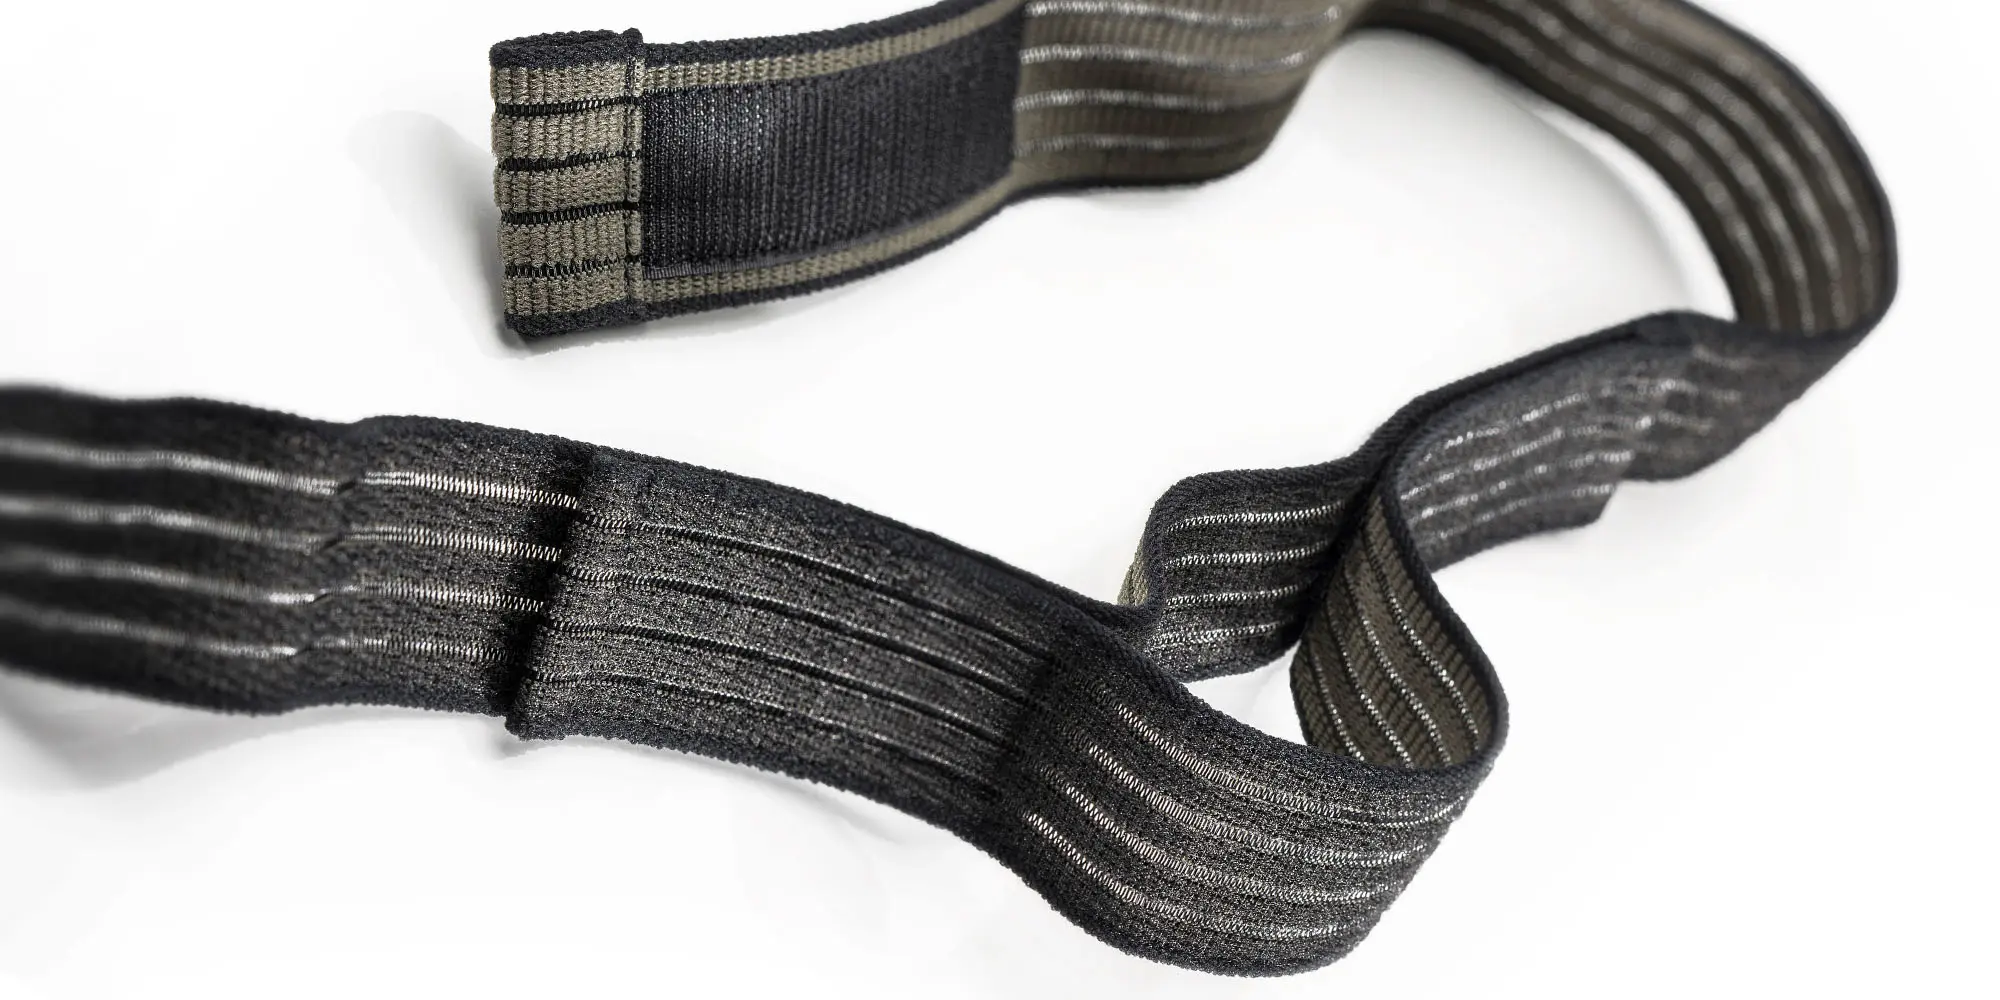 Klettfaehiges Elastikband in oliv-schwarz – JUMBO-Textil